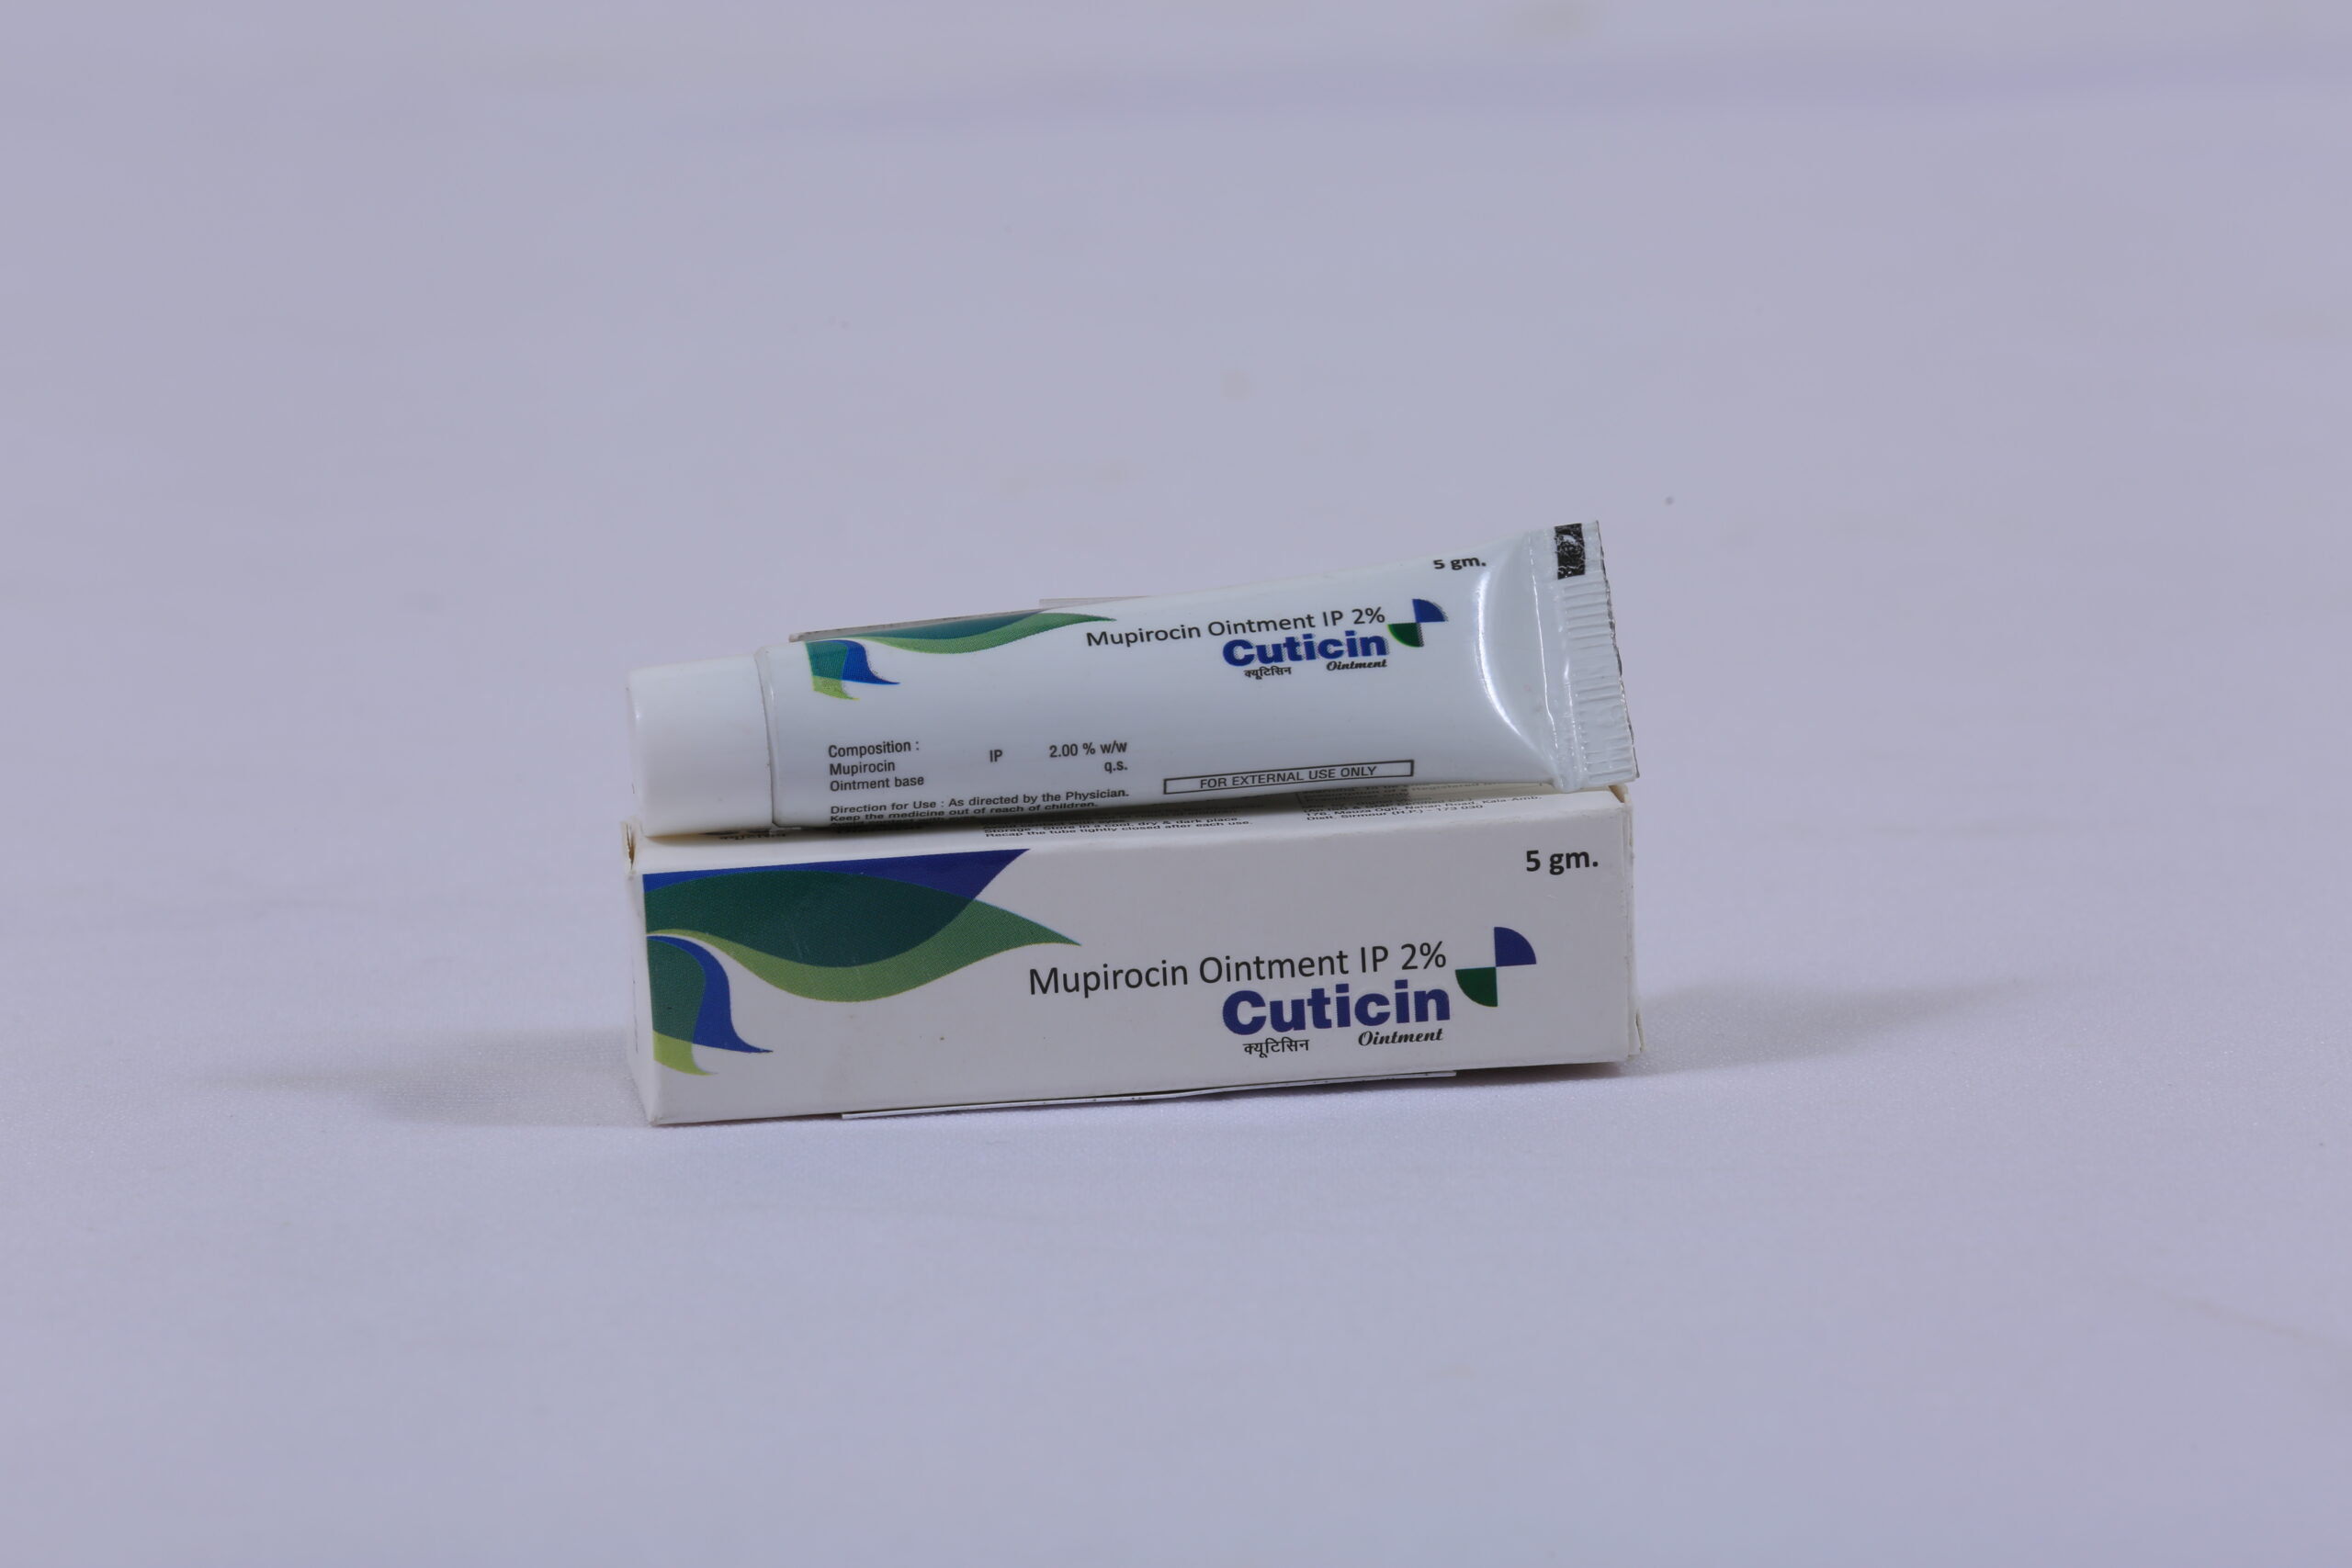 CUTICIN (Mupirocin Ointment IP 2%)